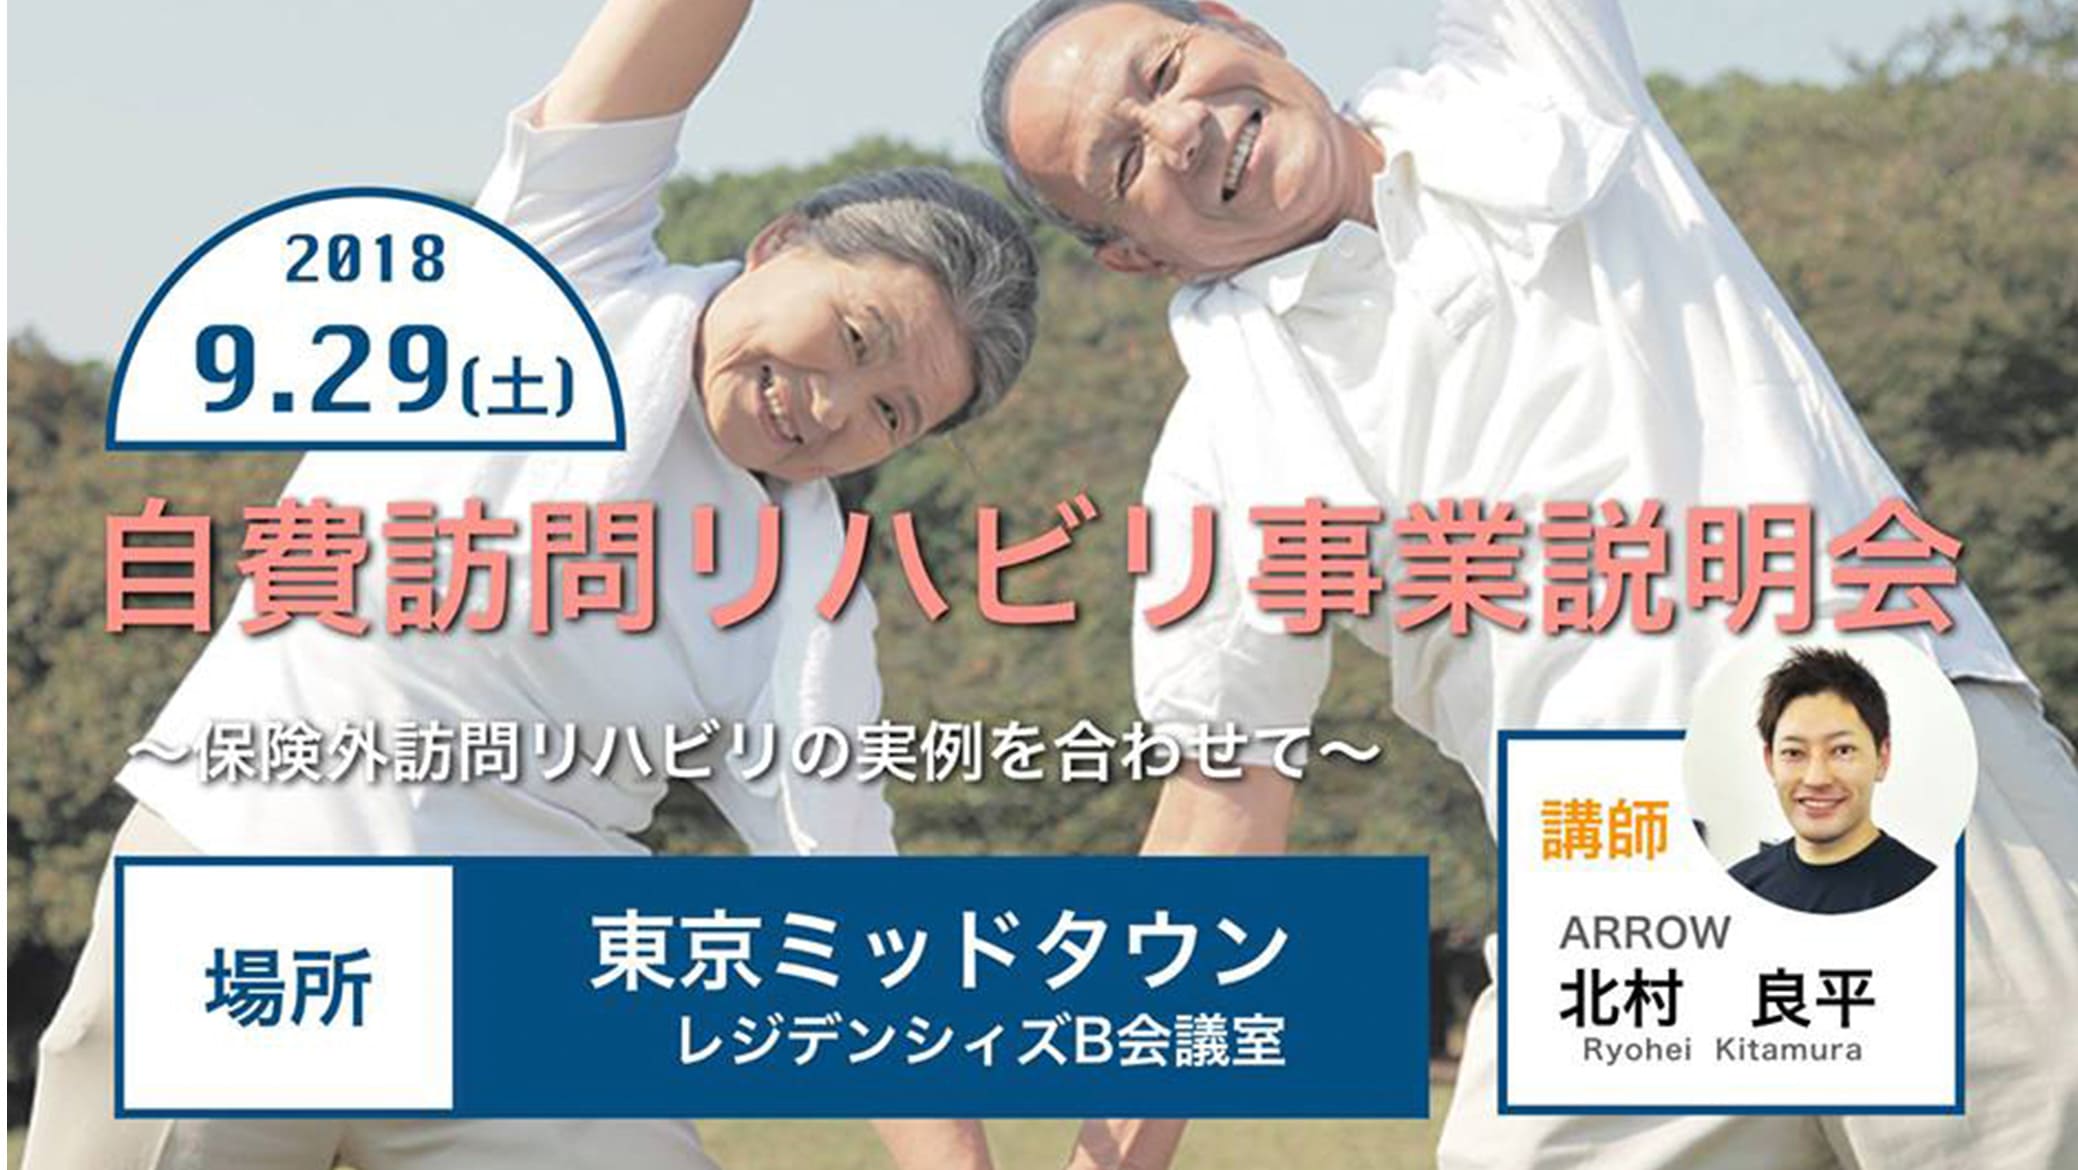 ARROW保険外リハビリ事業説明会　in 東京ミッドタウン